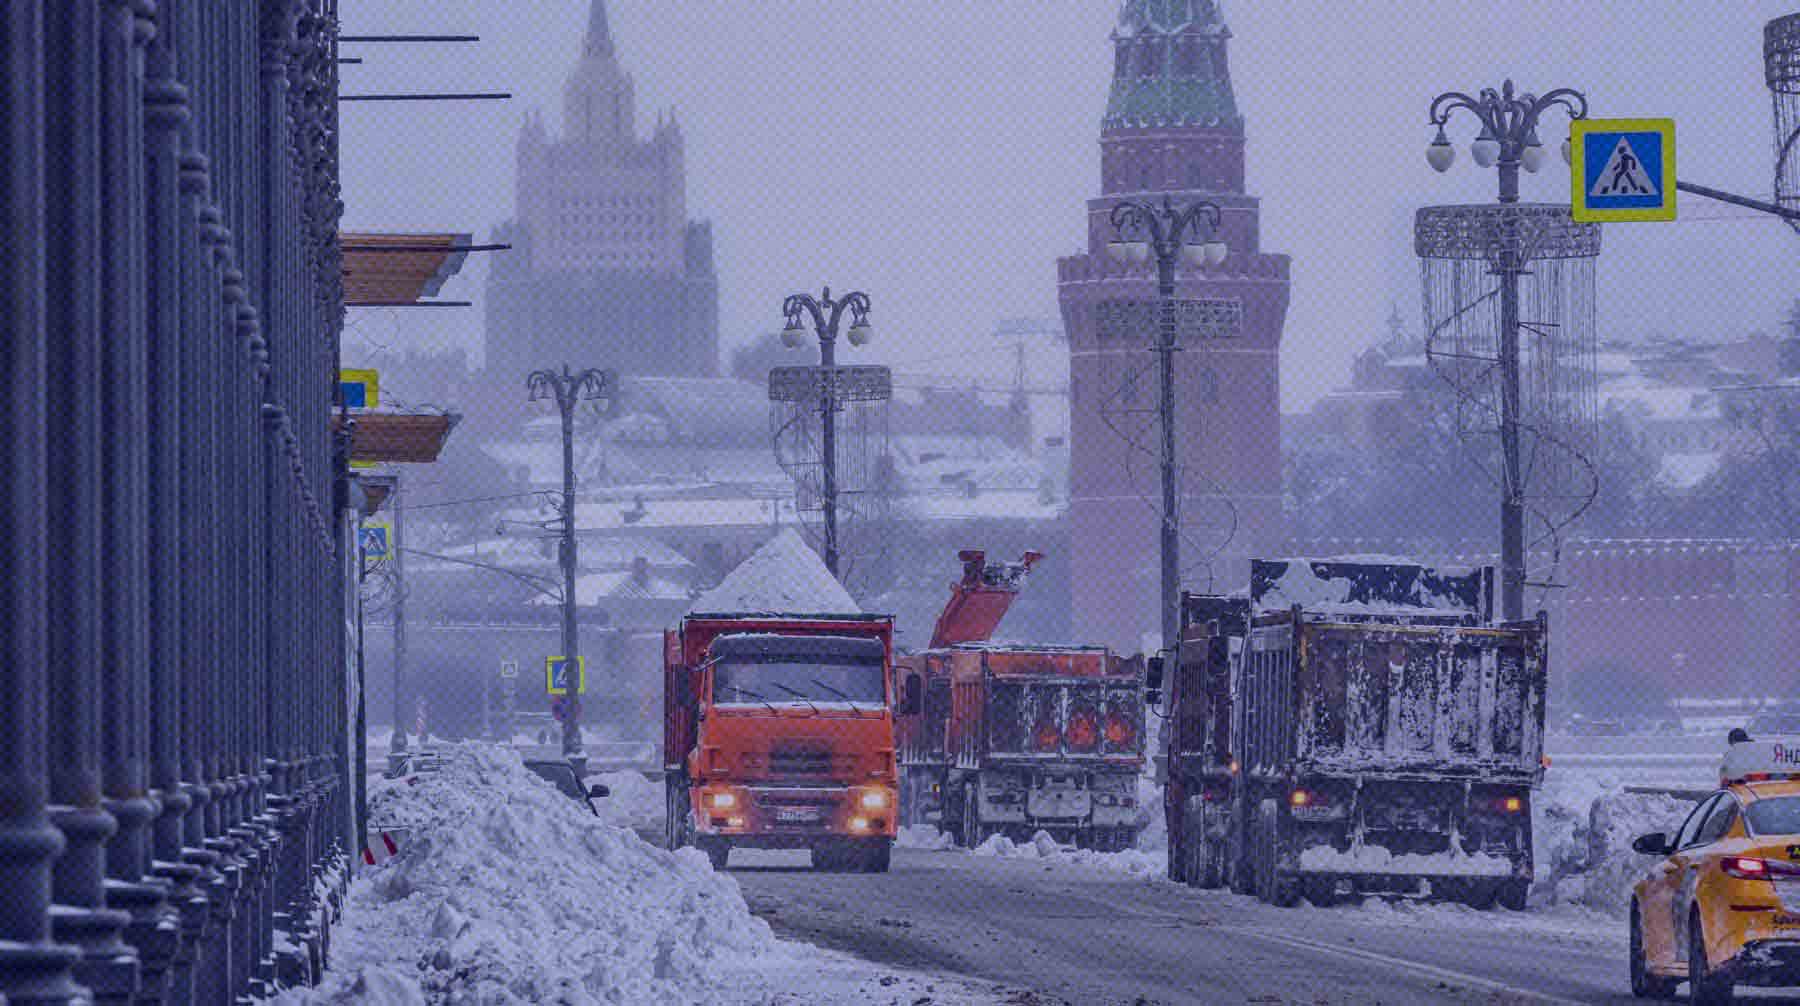 Dailystorm - Пробки на дорогах и сугробы по колено. Сильнейший снегопад со времен Сталина парализовал движение в Москве